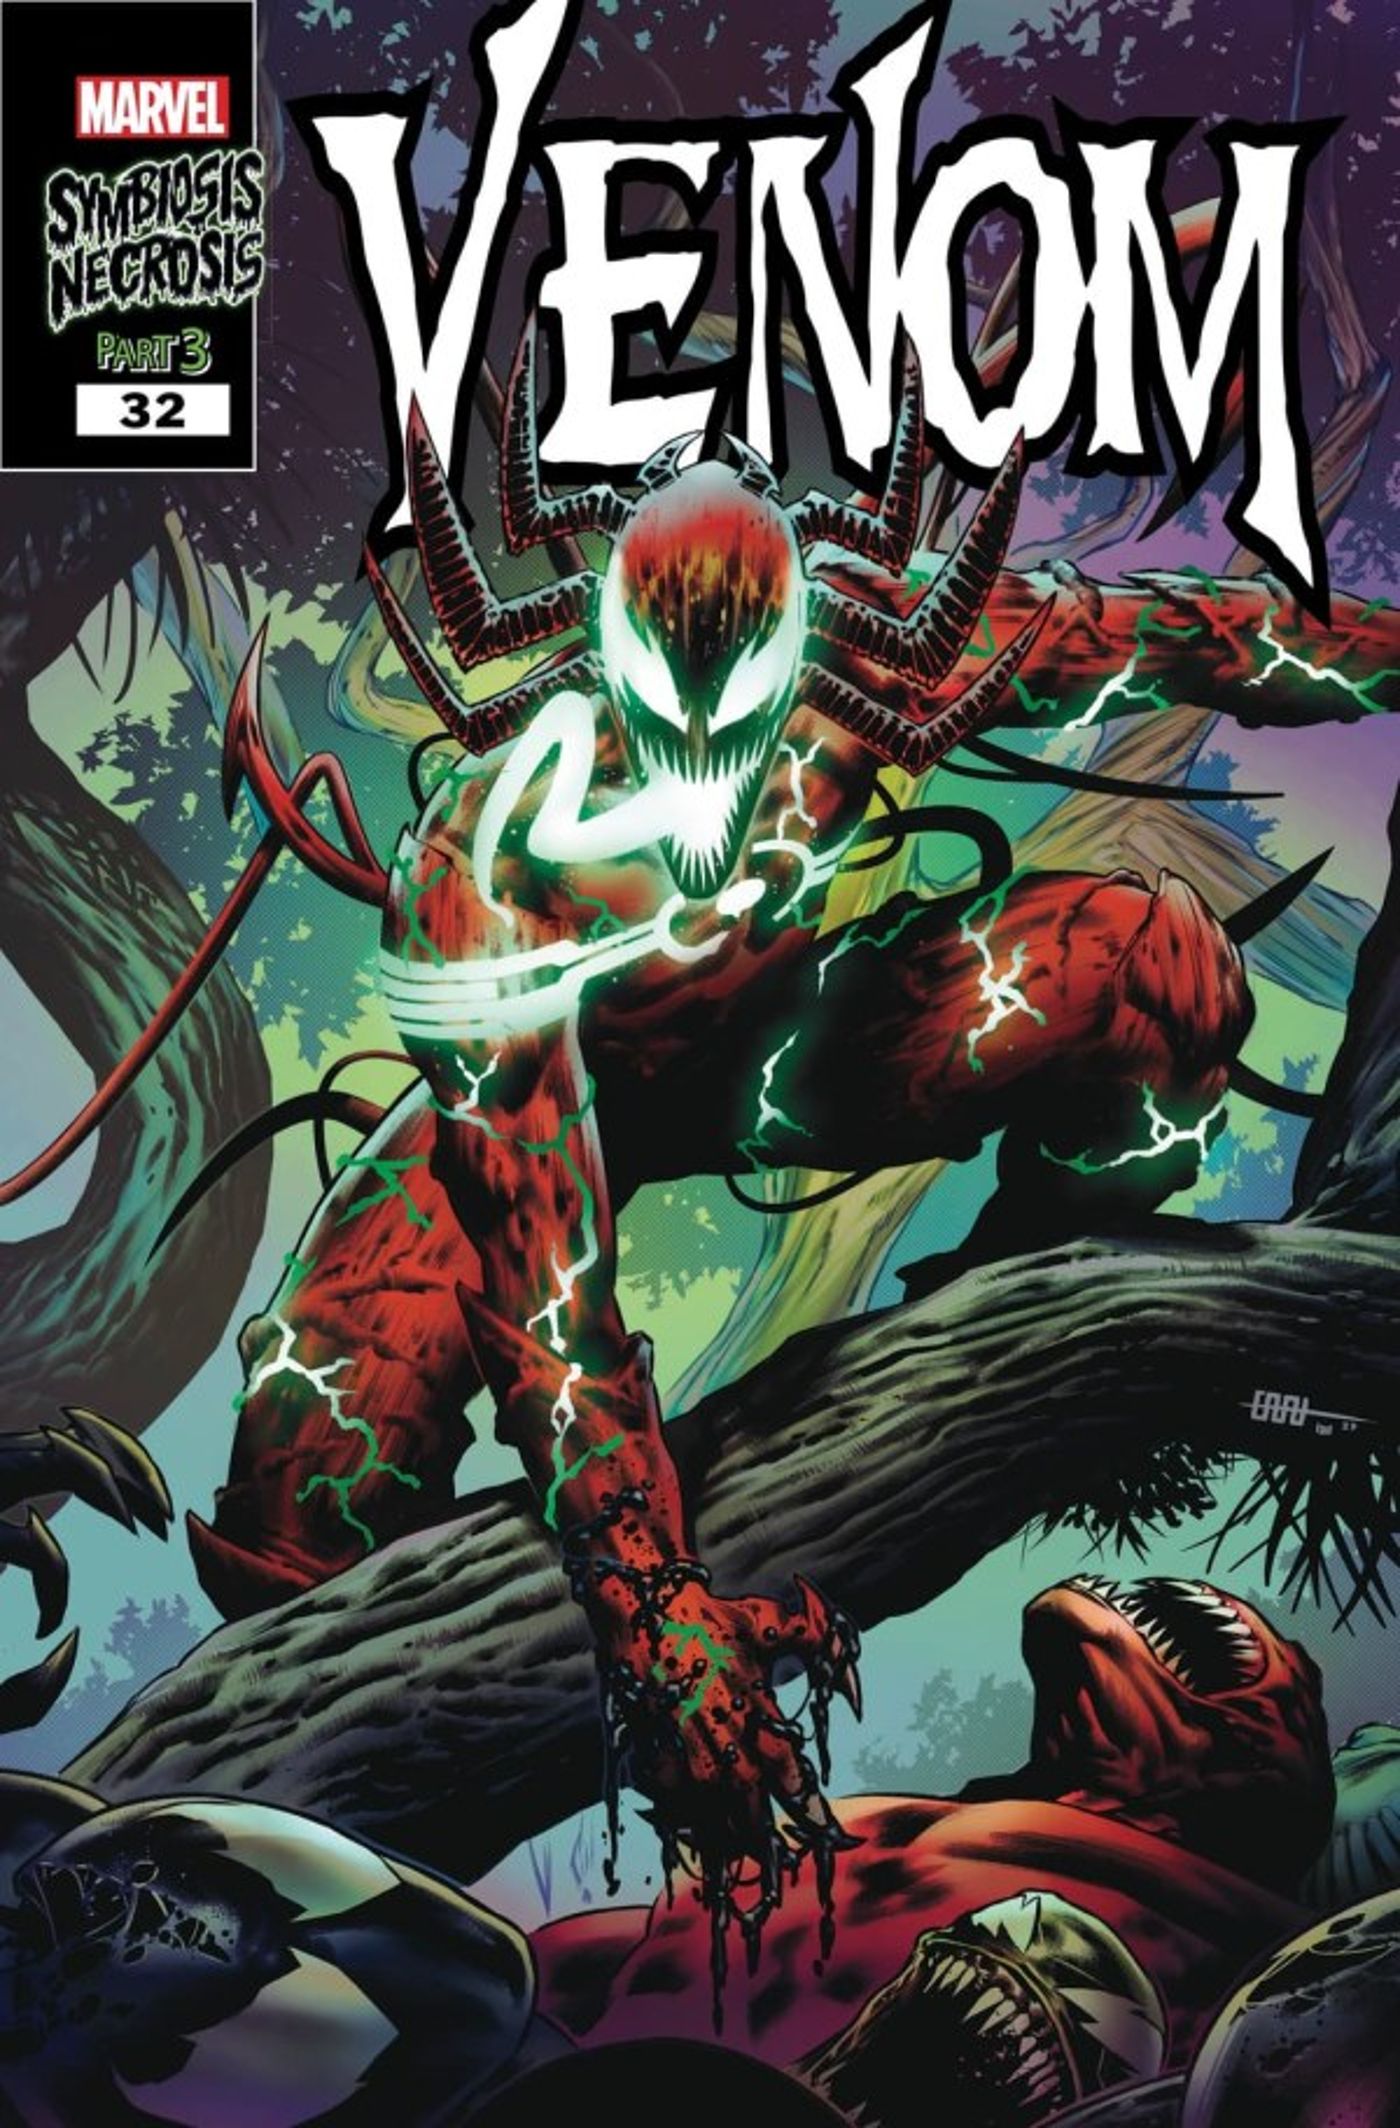 Capa principal de Venom #32 por CAFU, com participação de Carnage